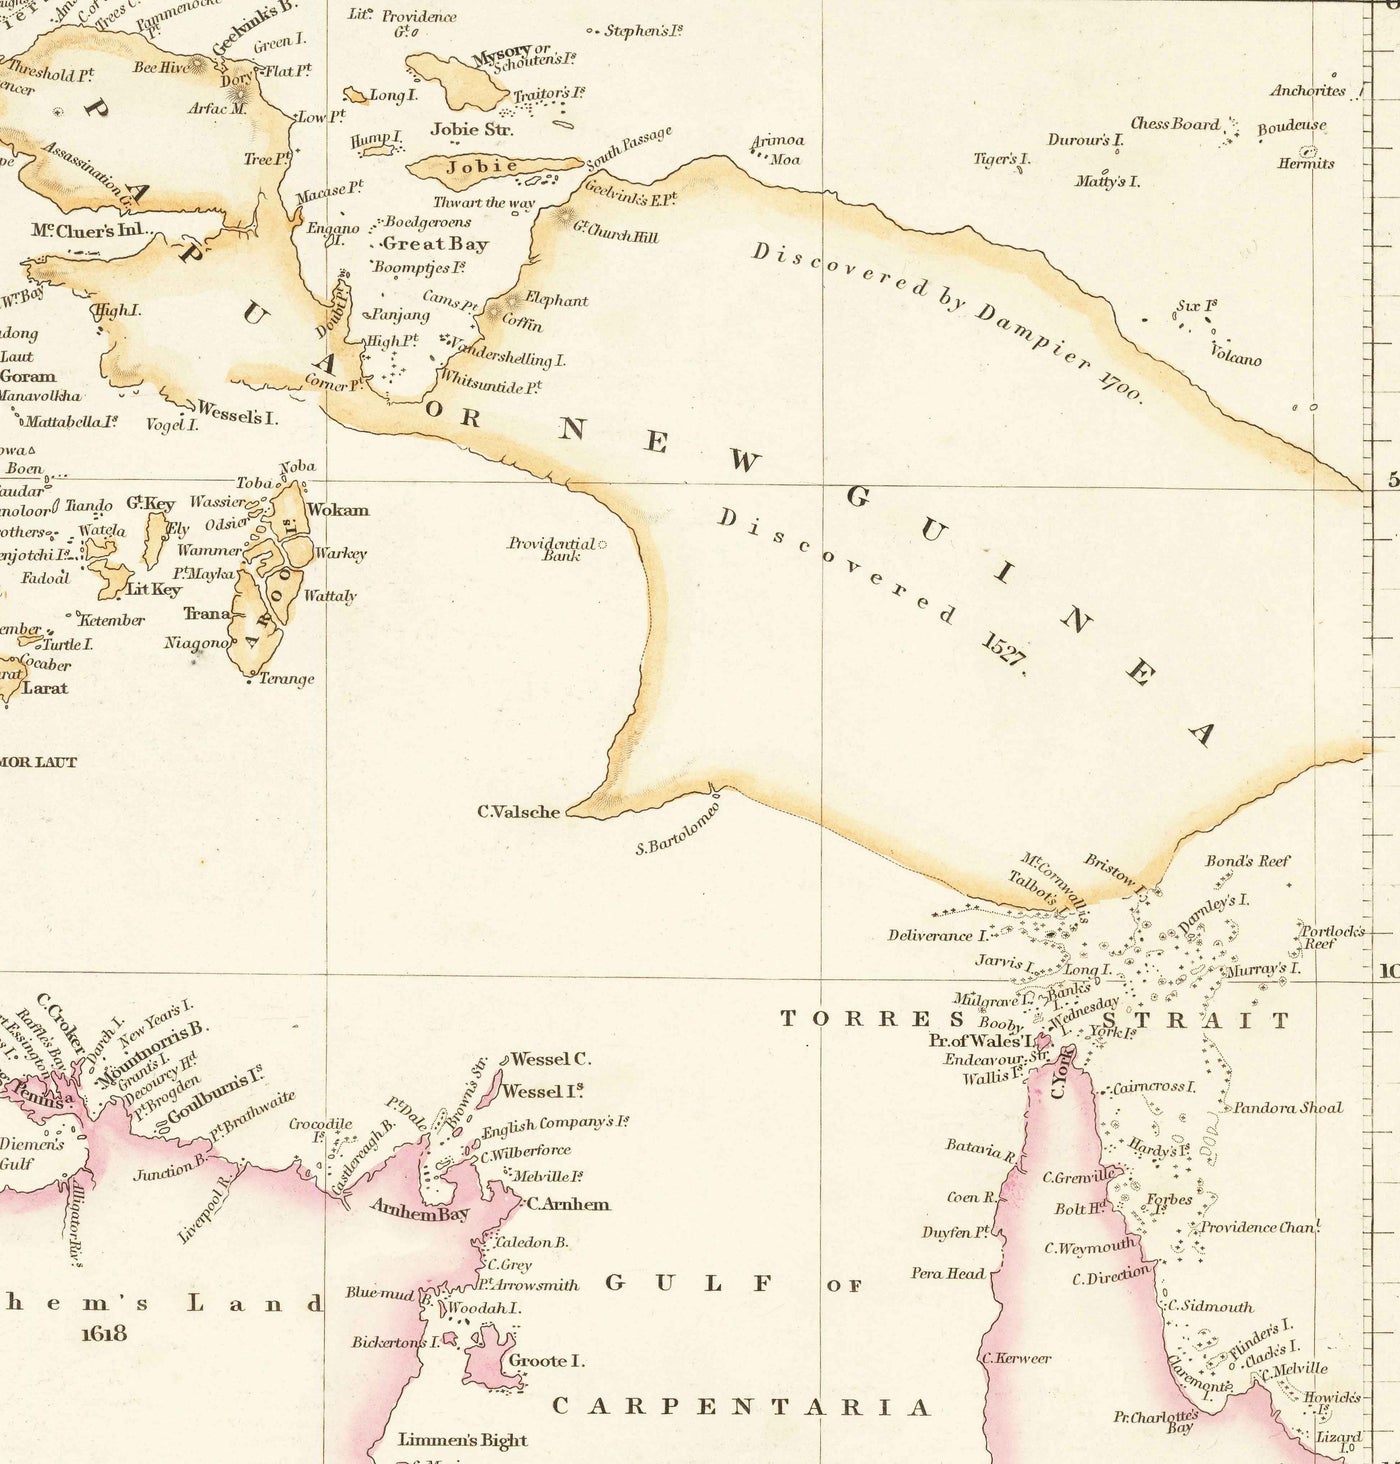 Ancienne carte de l'archipel malais et des Indes orientales par Arrowsmith, 1859 - Asie du Sud-Est, Philippines, îles, détroits, Singapour